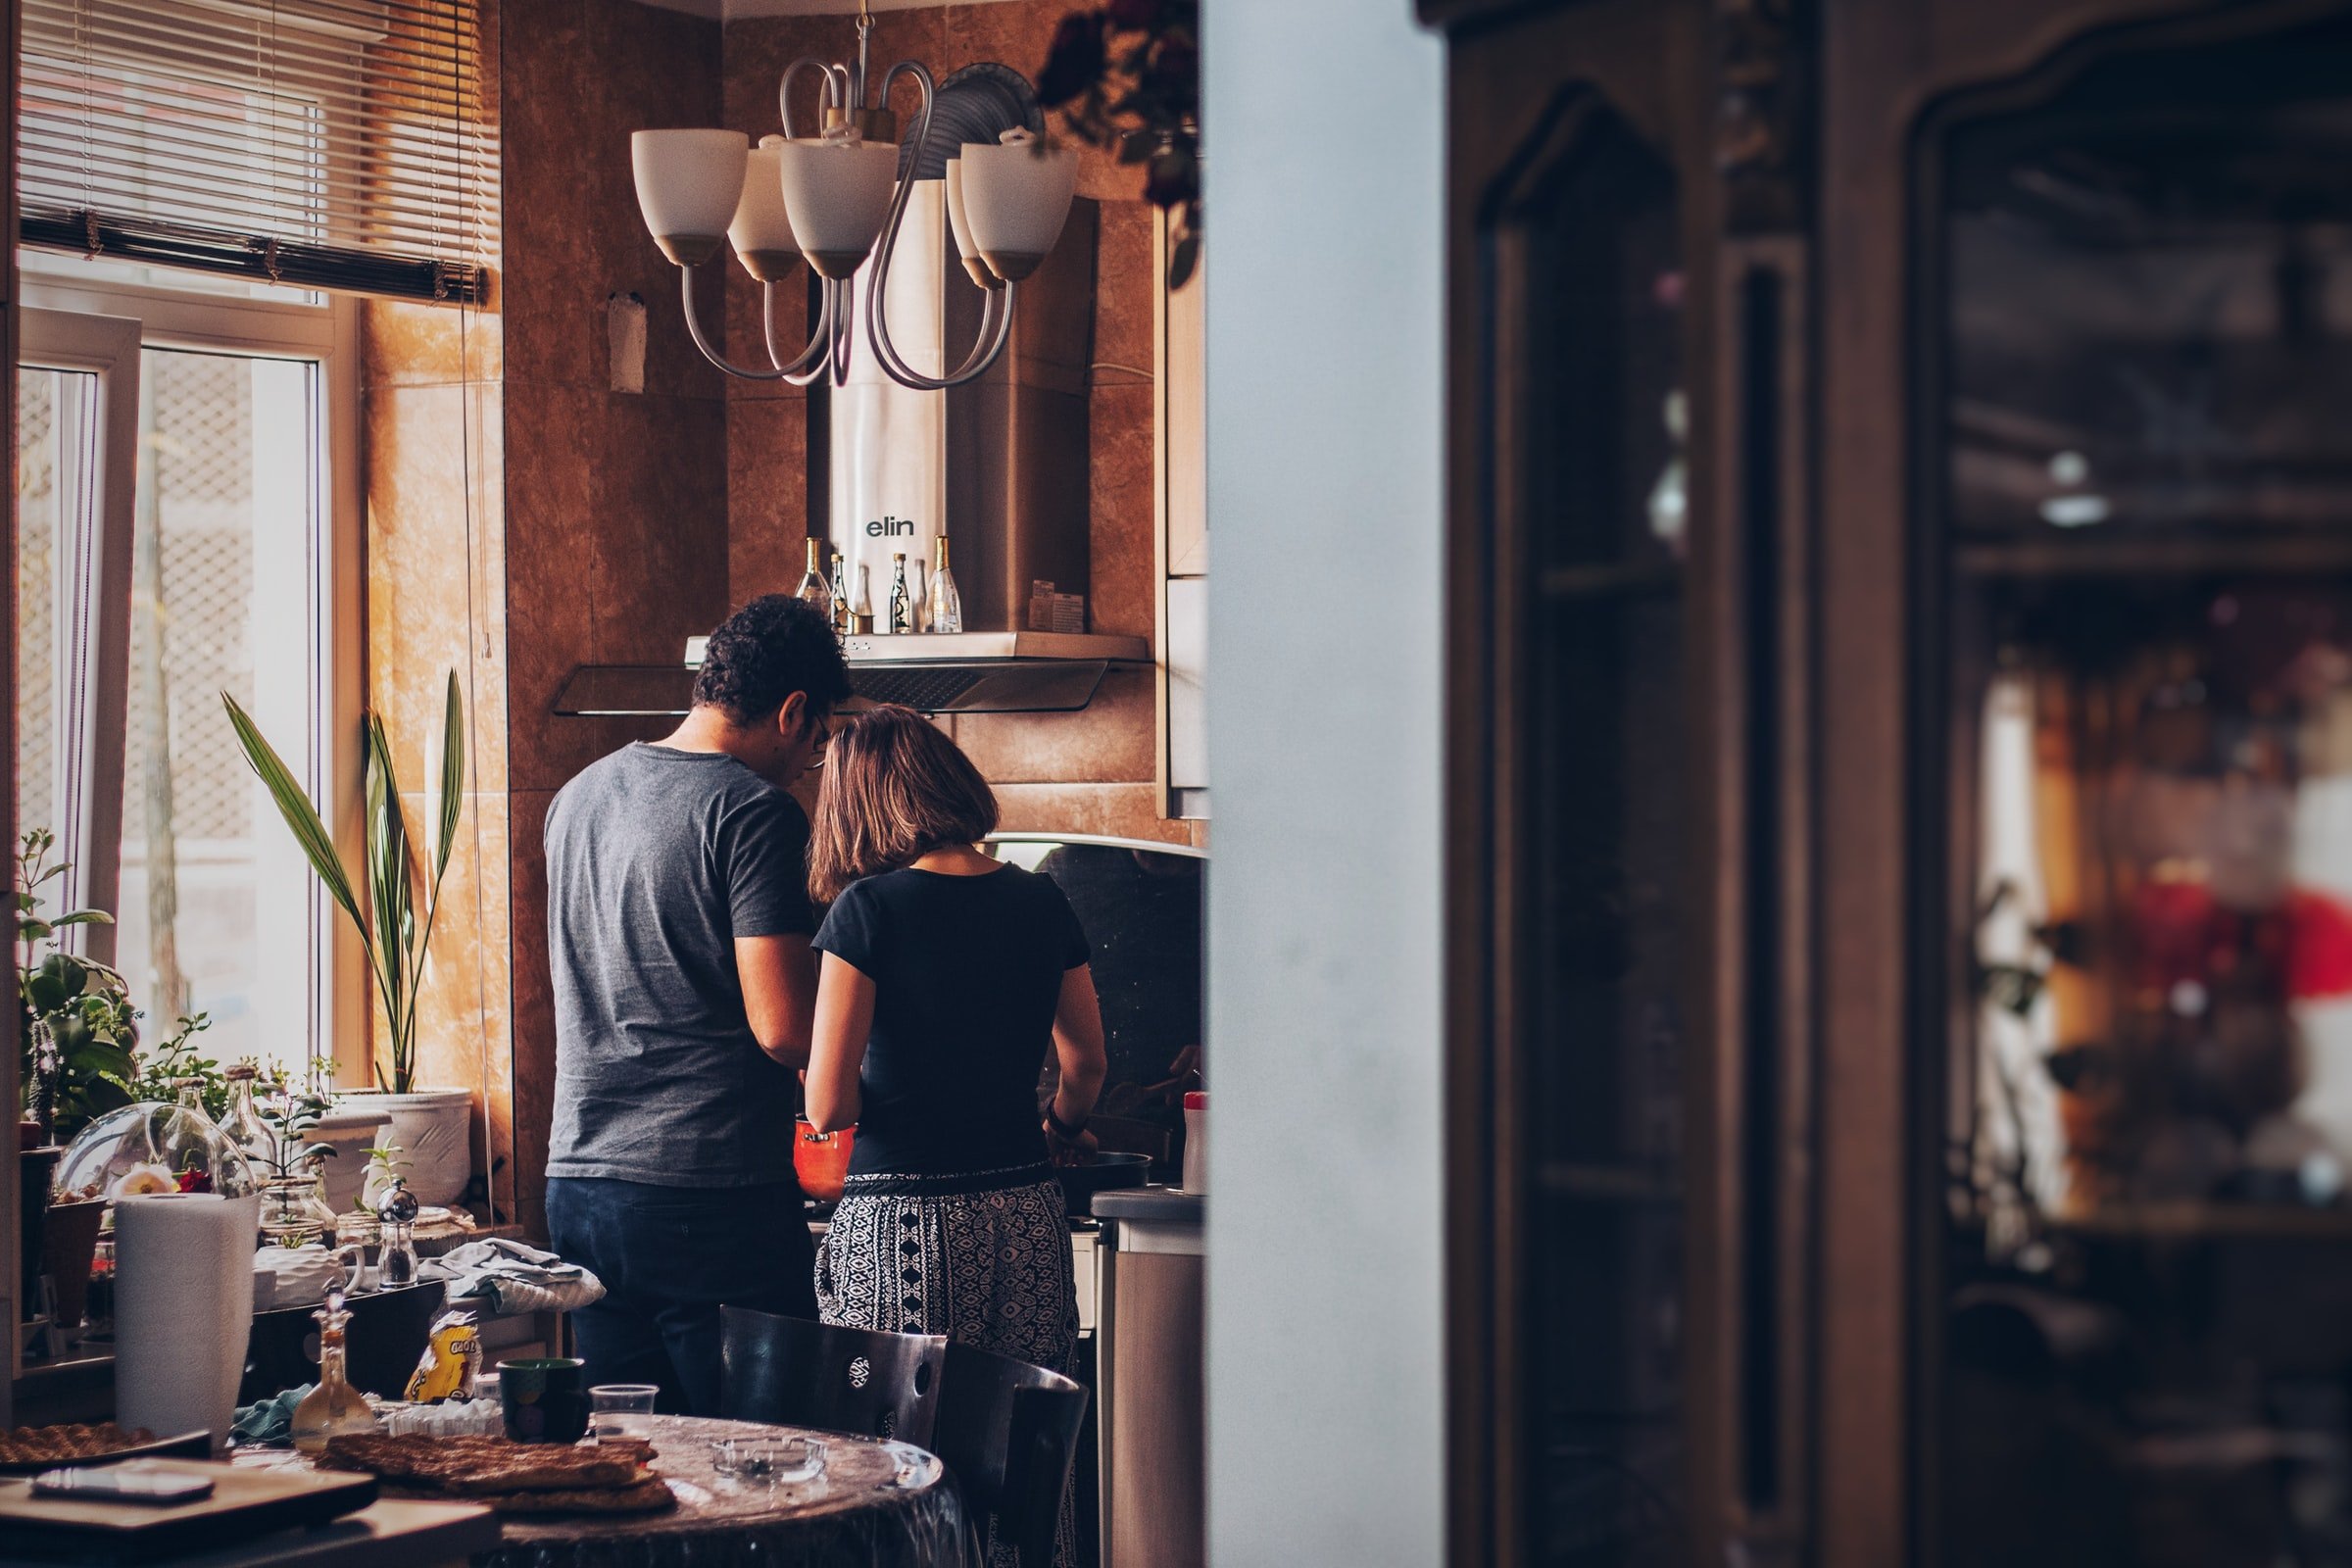 Ein Ehepaar bei der Arbeit in der Küche. | Quelle: Unsplash